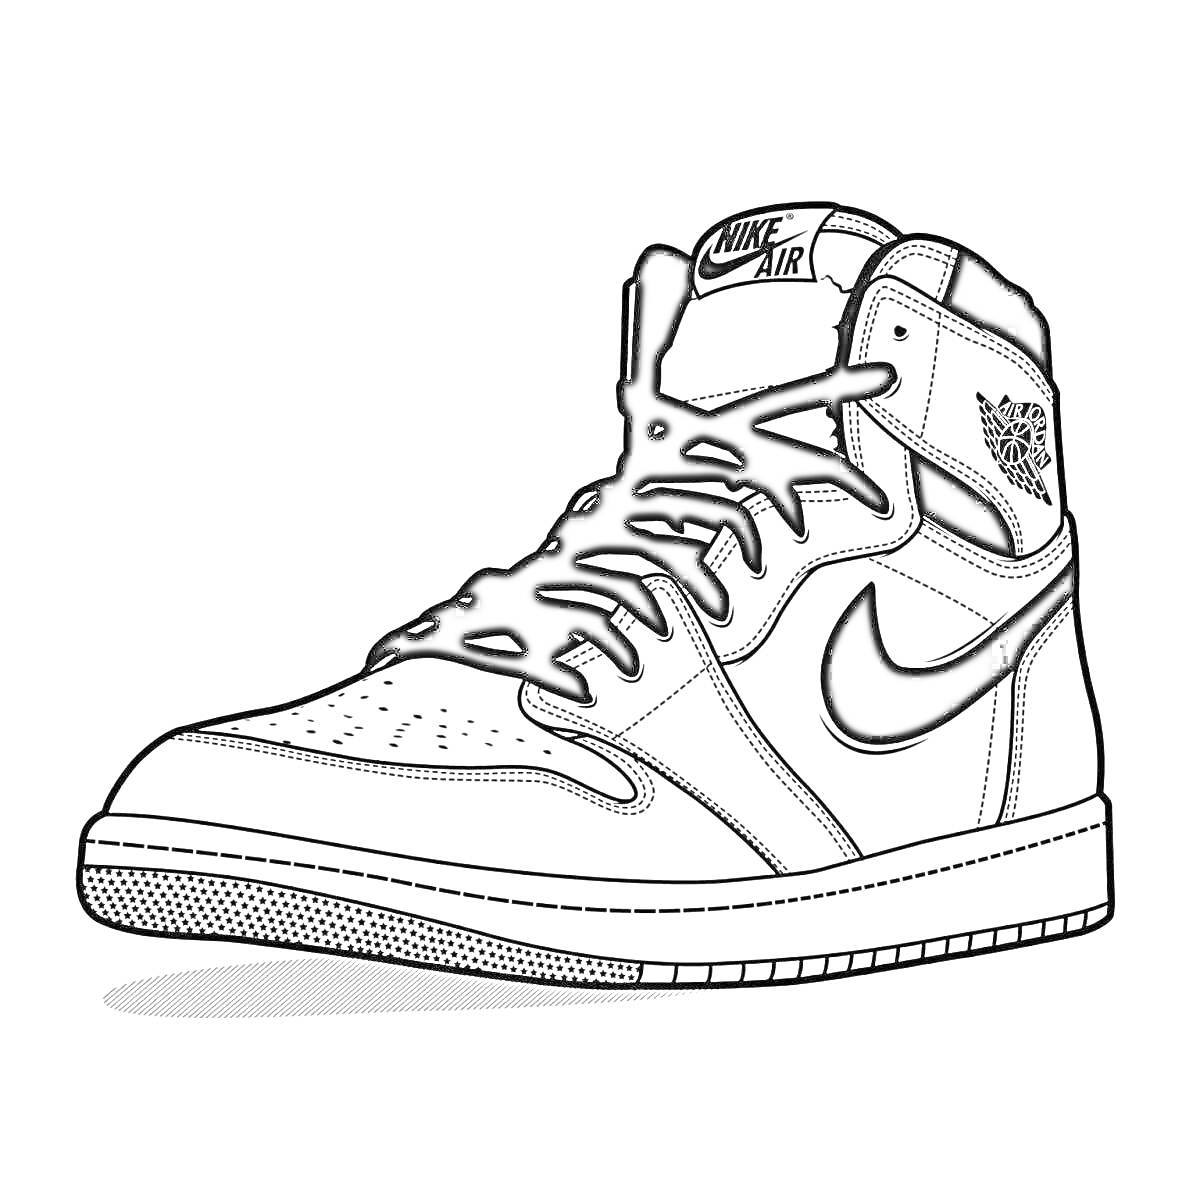 Раскраска Раскраска кроссовка с логотипом Nike, шнурками, перфорированной поверхностью и надписью Nike Air